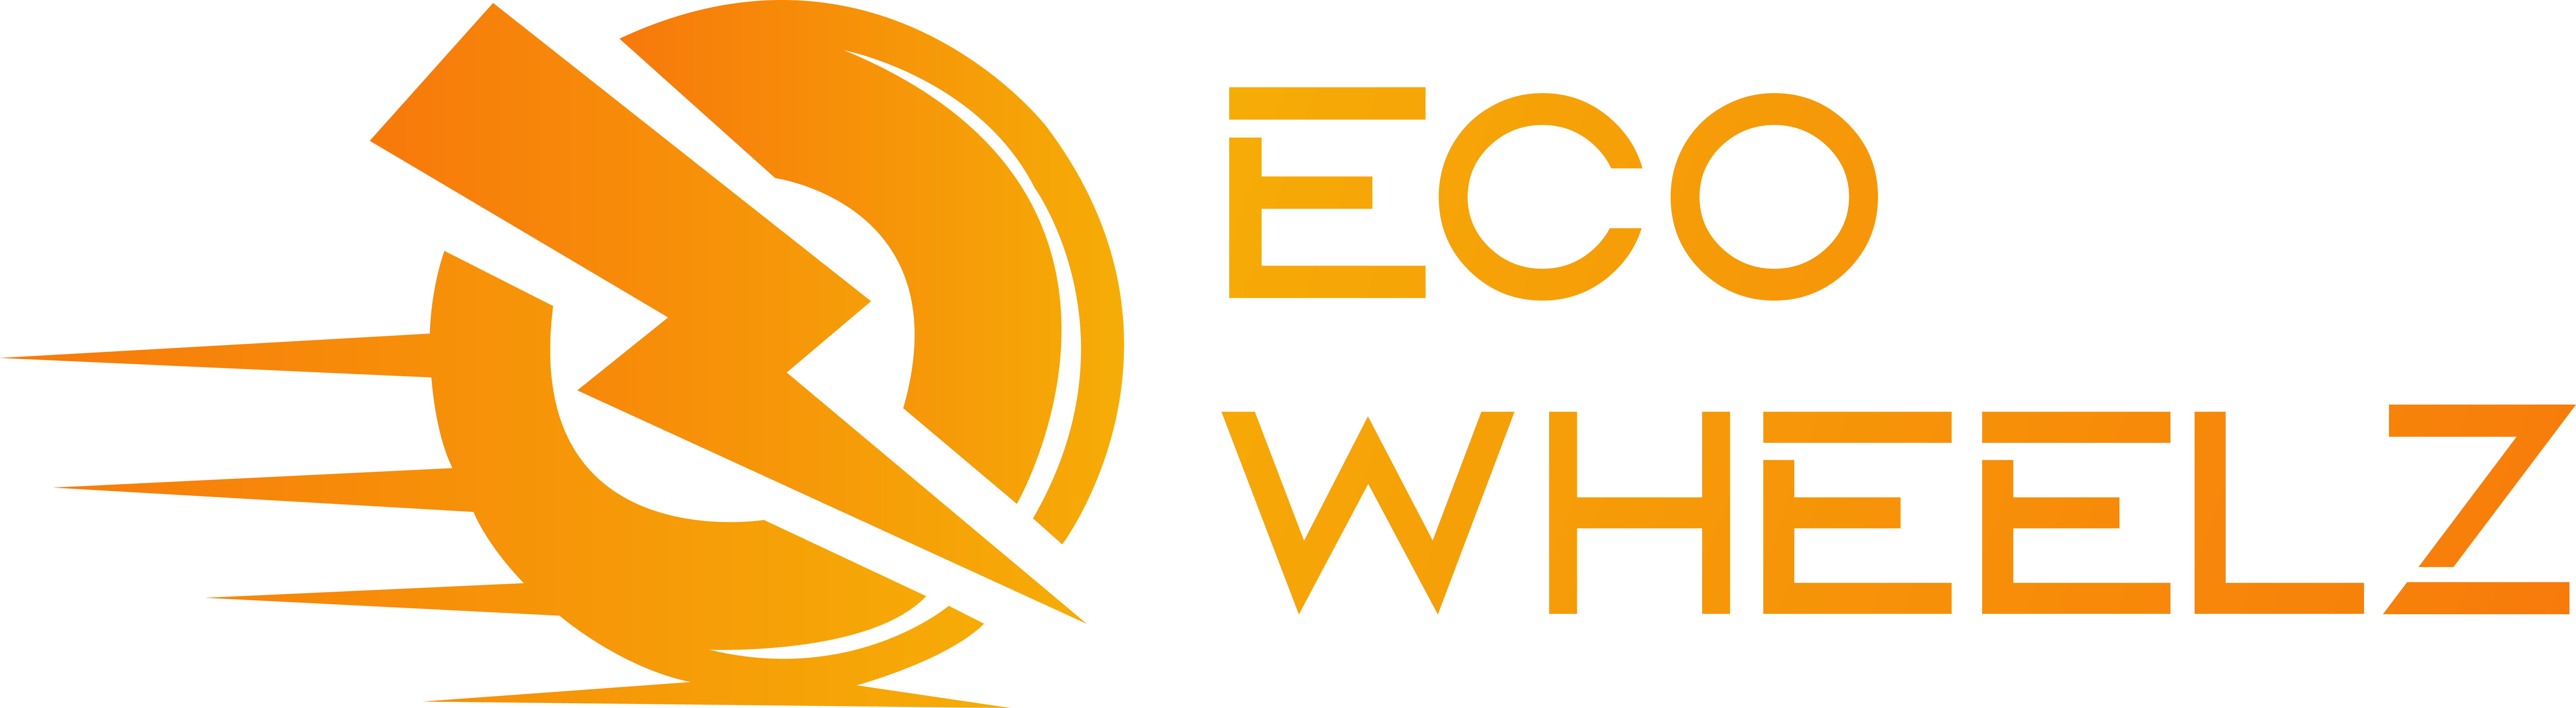 Asset 4Eco Wheelz Orange